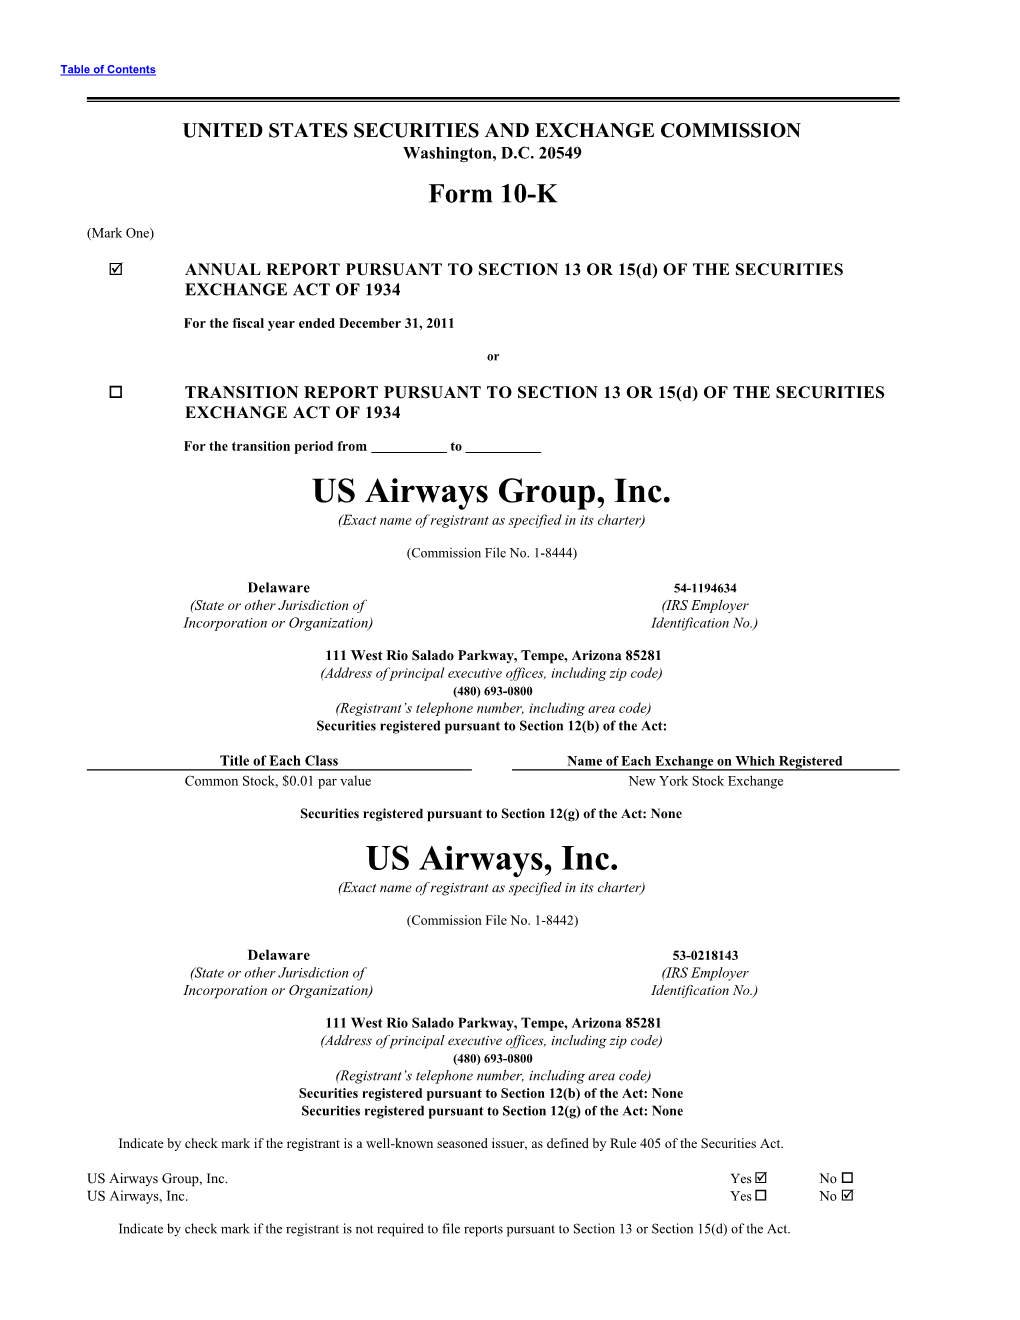 2011 US Airways Annual Report